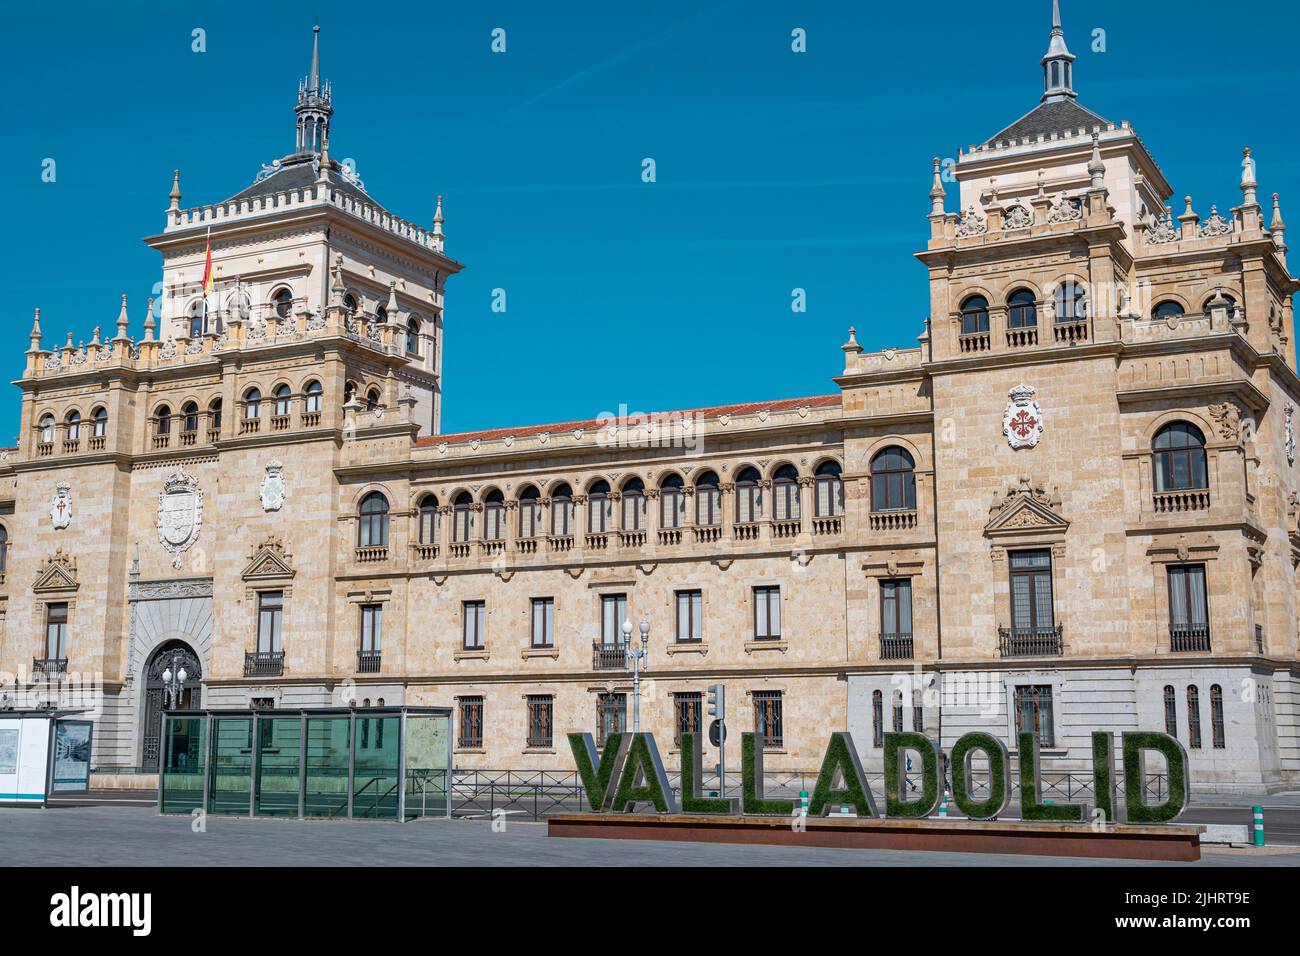 Eine schöne Aufnahme des Banners Valladolid vor der Kavallerieakademie Stockfoto